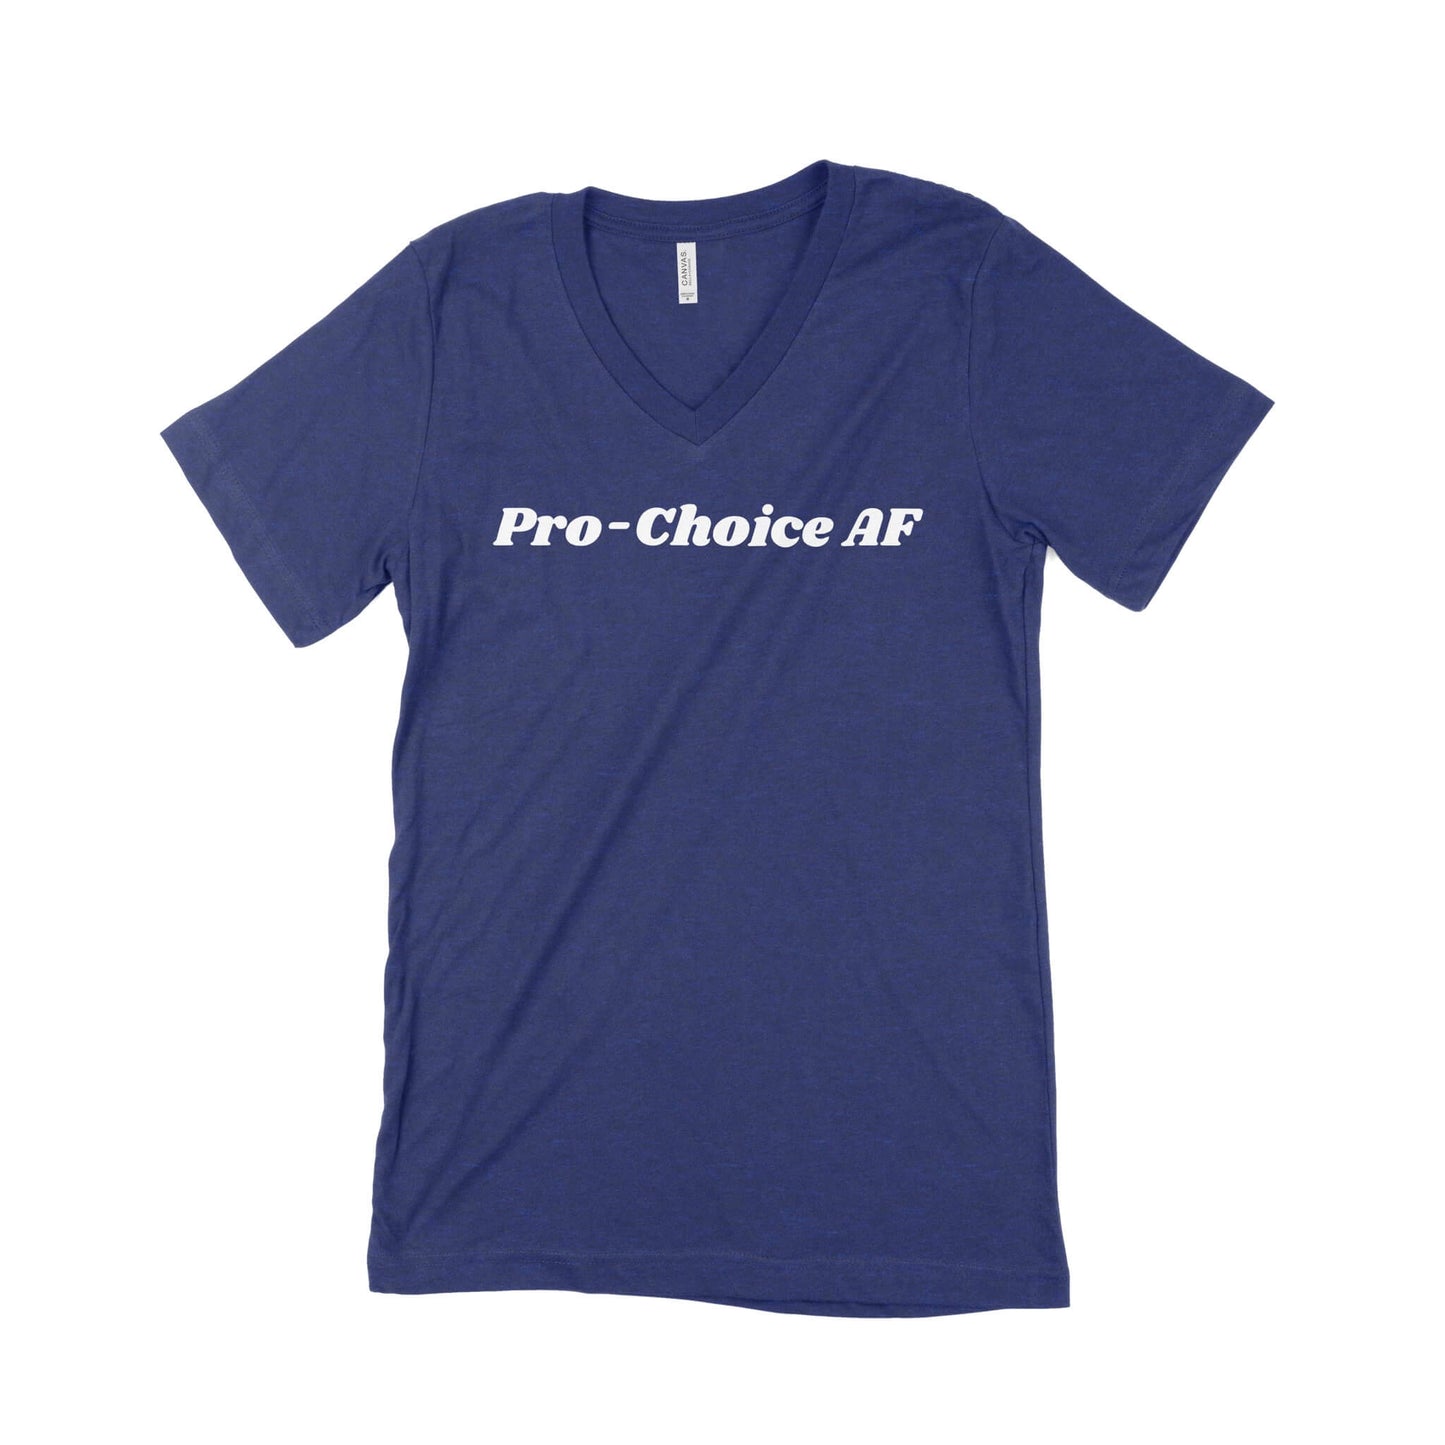 Pro-Choice AF Unisex V-Neck T-Shirt